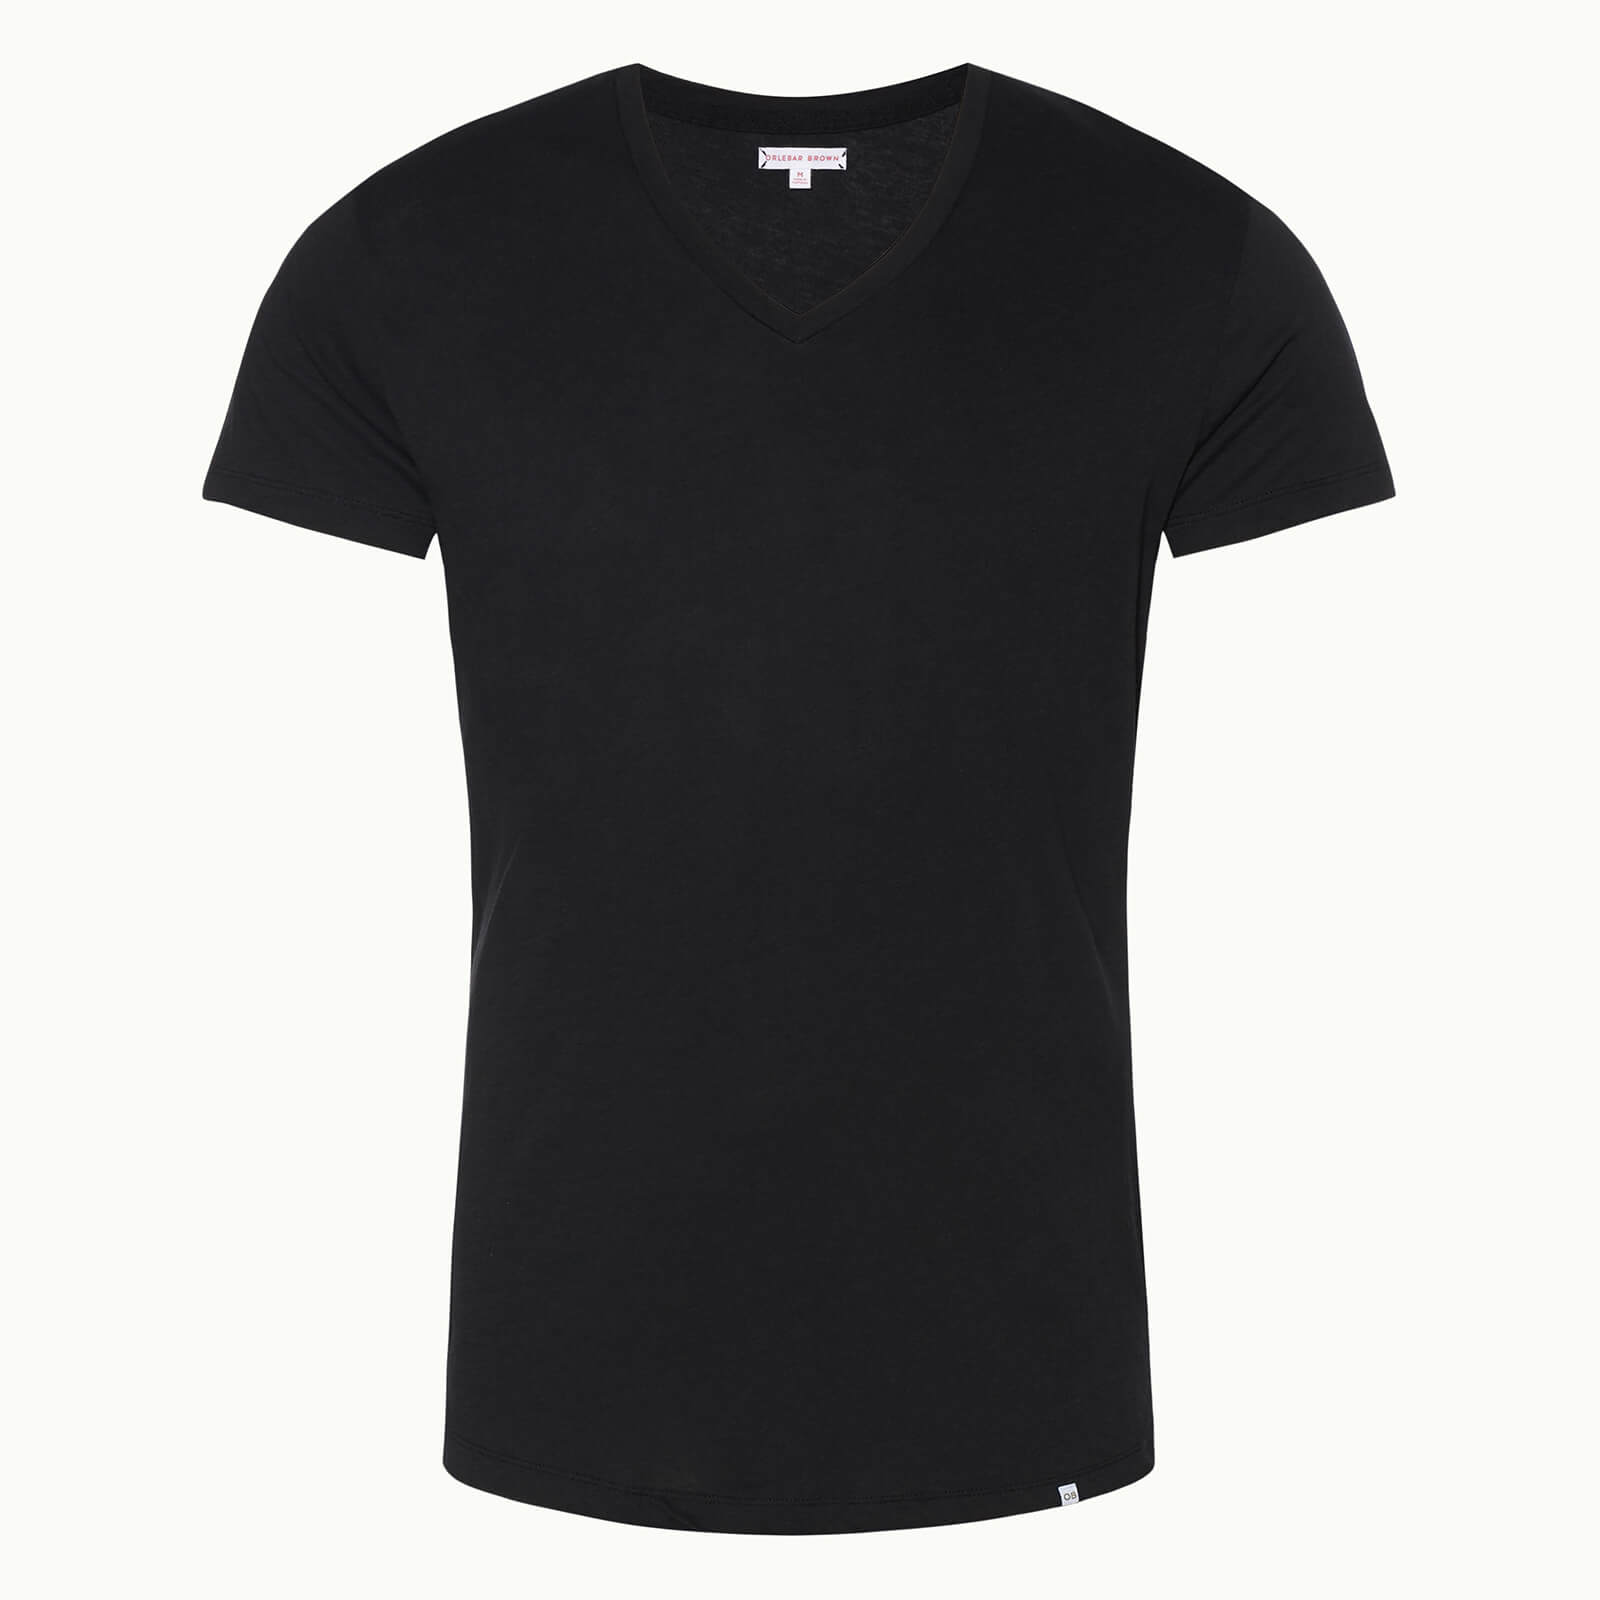 Orlebar Brown Men's V-Neck T-Shirt - Black - L